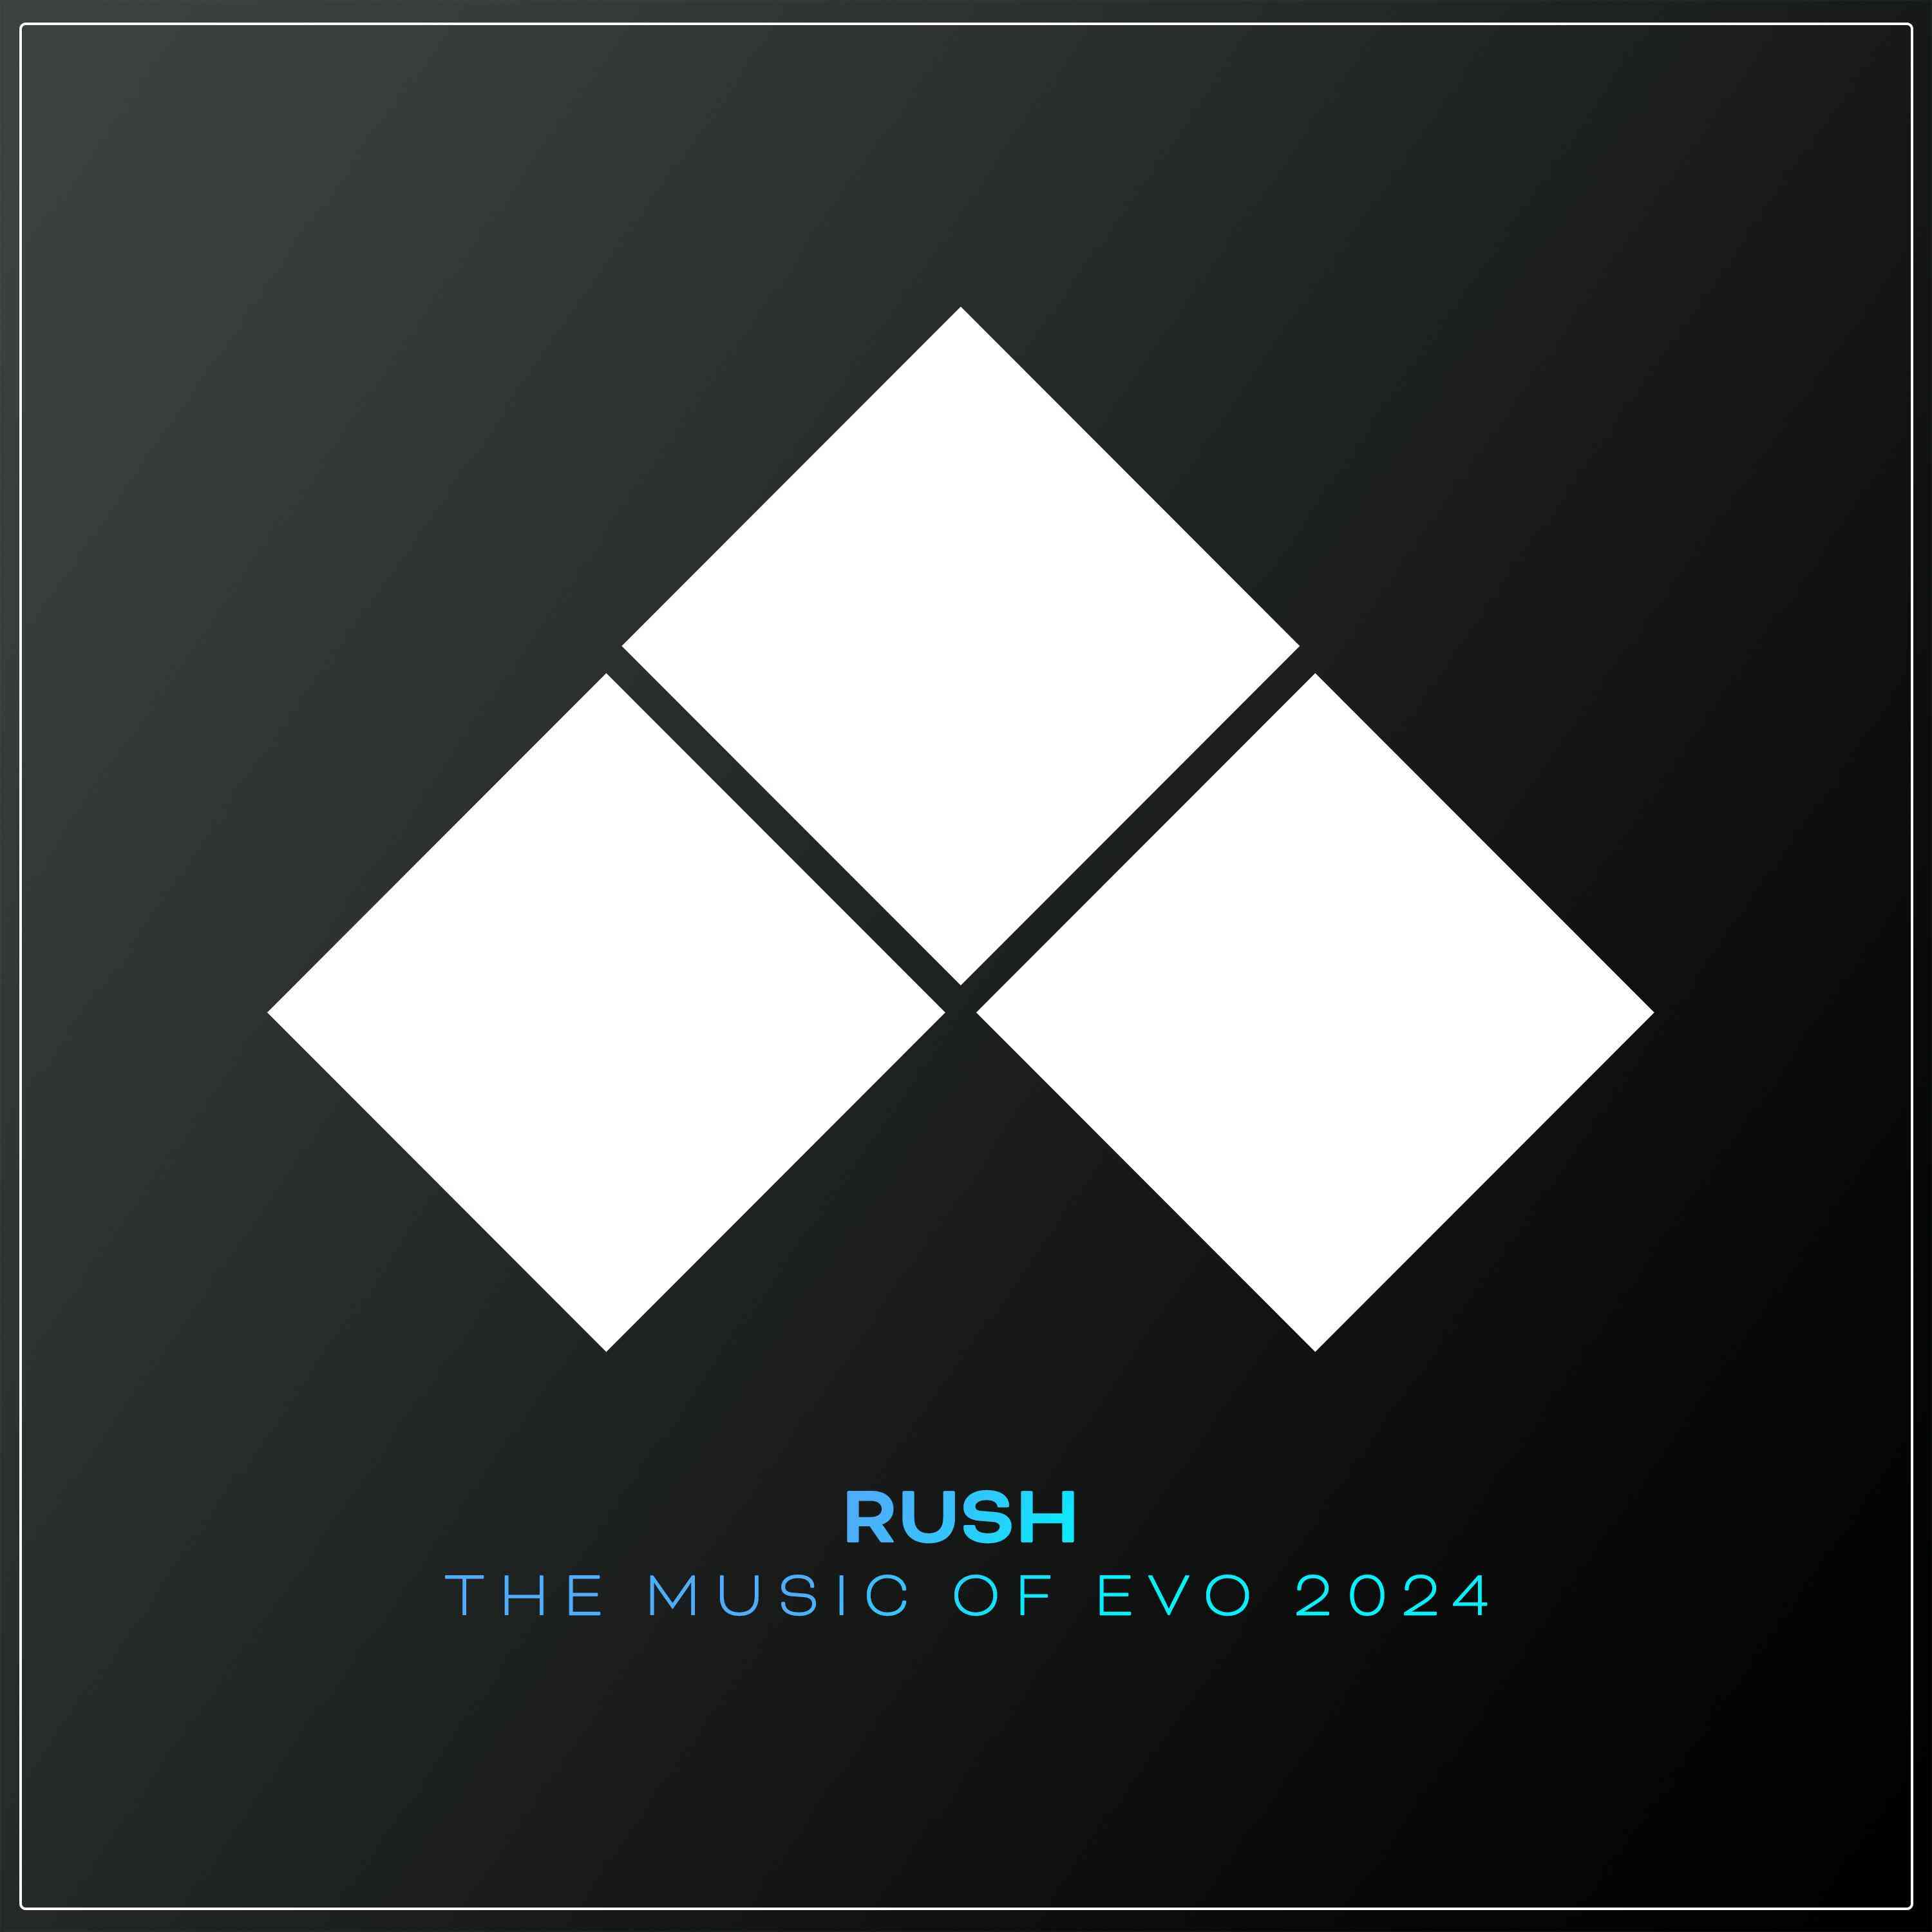 RUSH: The Music of EVO 2024